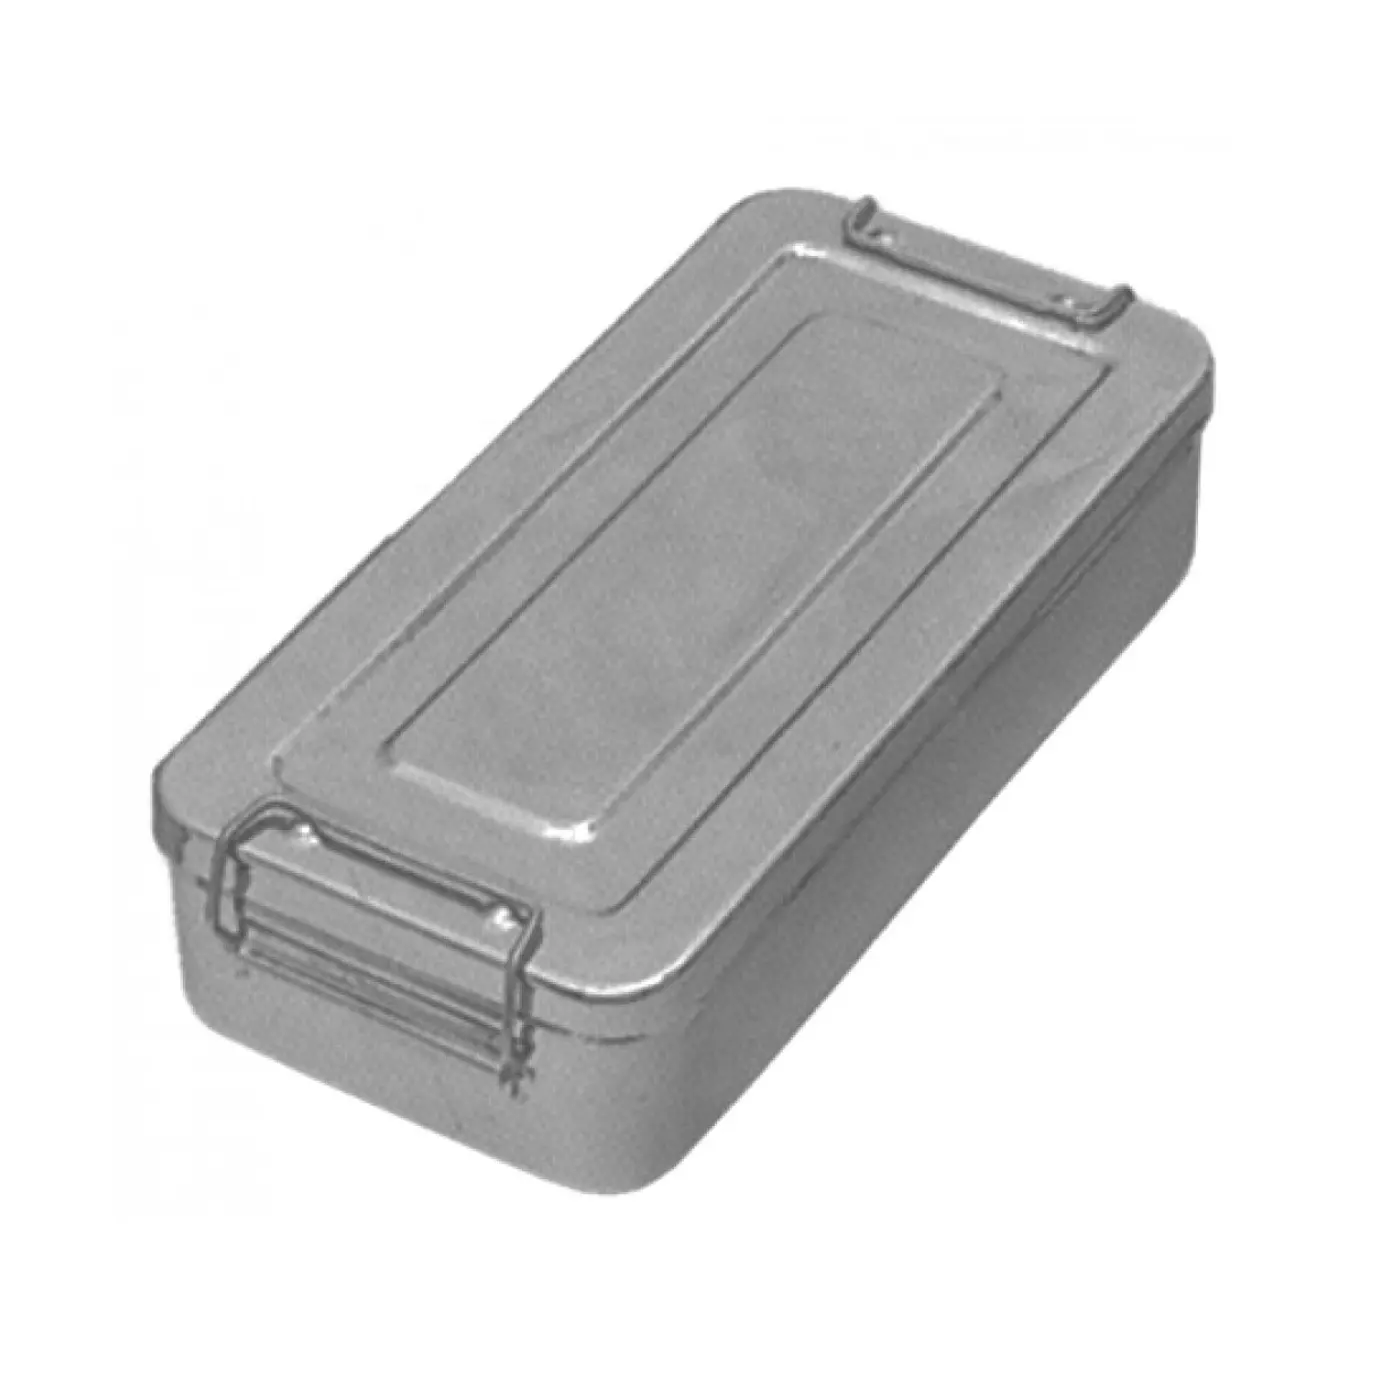 SIGAL MEDCO-caja de instrumentos quirúrgicos de acero inoxidable para uso médico